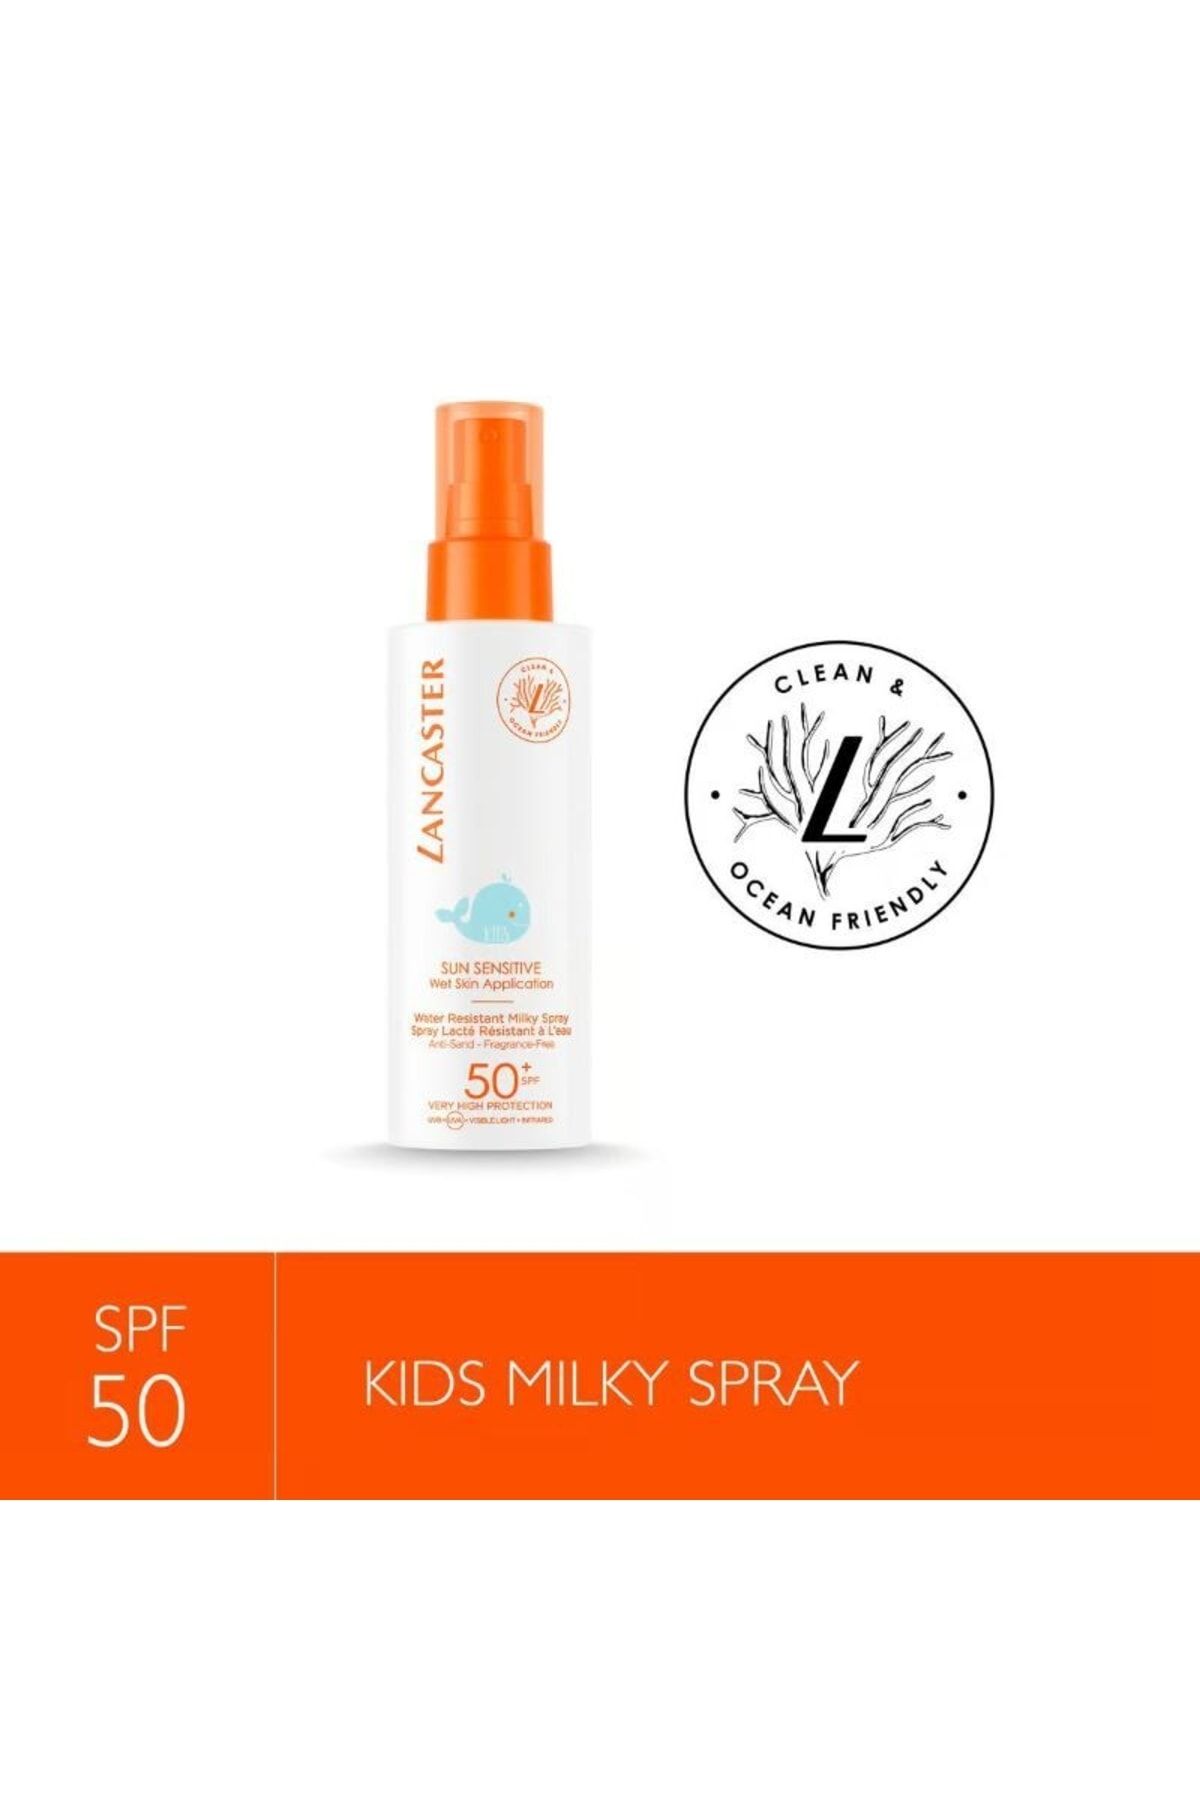 Lancaster Çok Yüksek Korumalı Milky Spray For Kids Spf50+